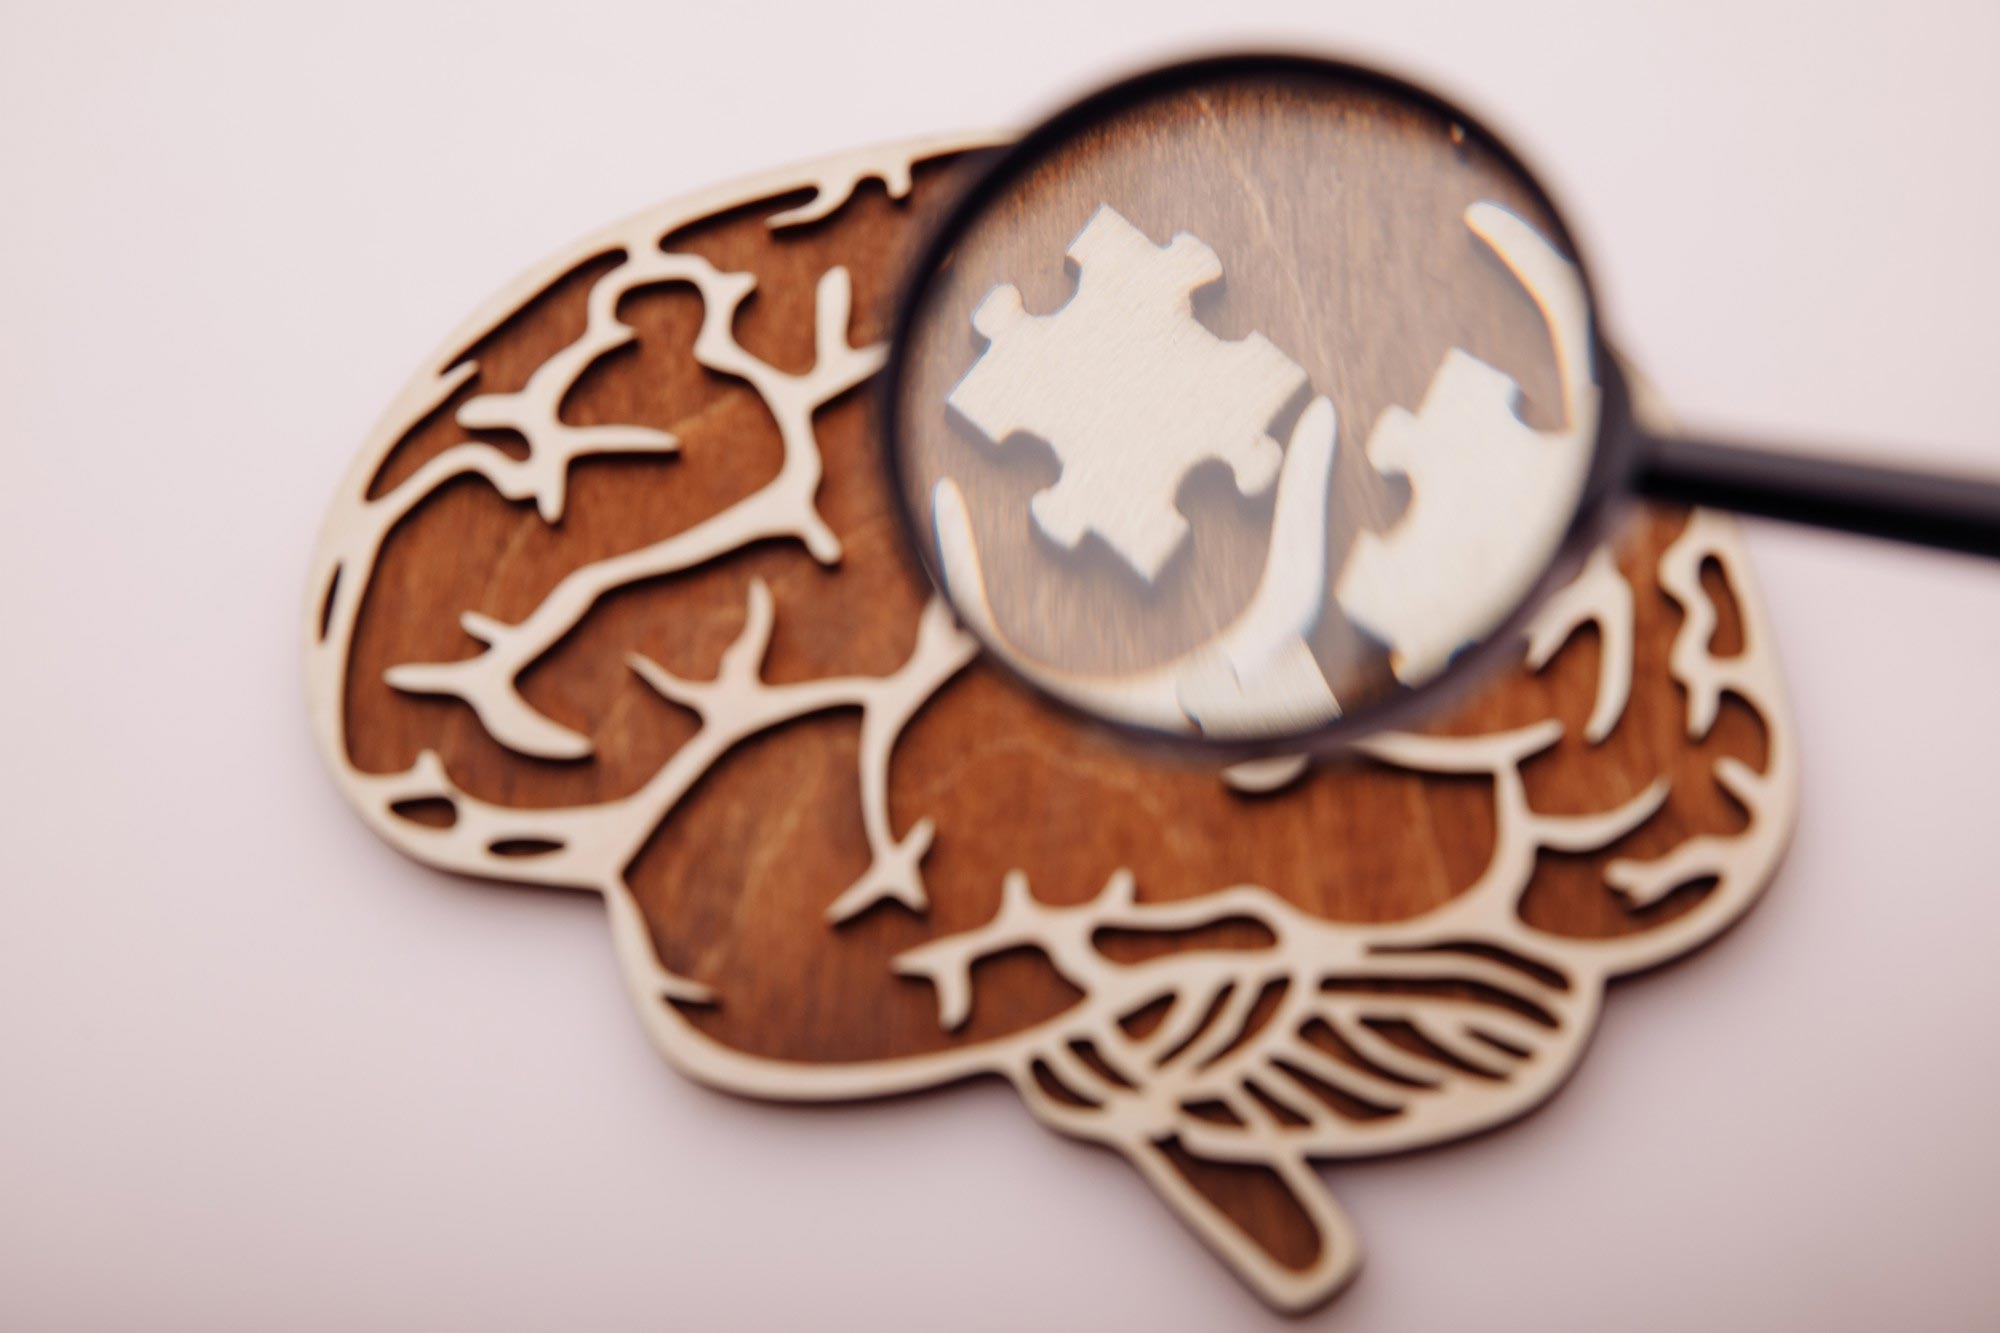 Brain Puzzle Alzheimers Dementia Concept